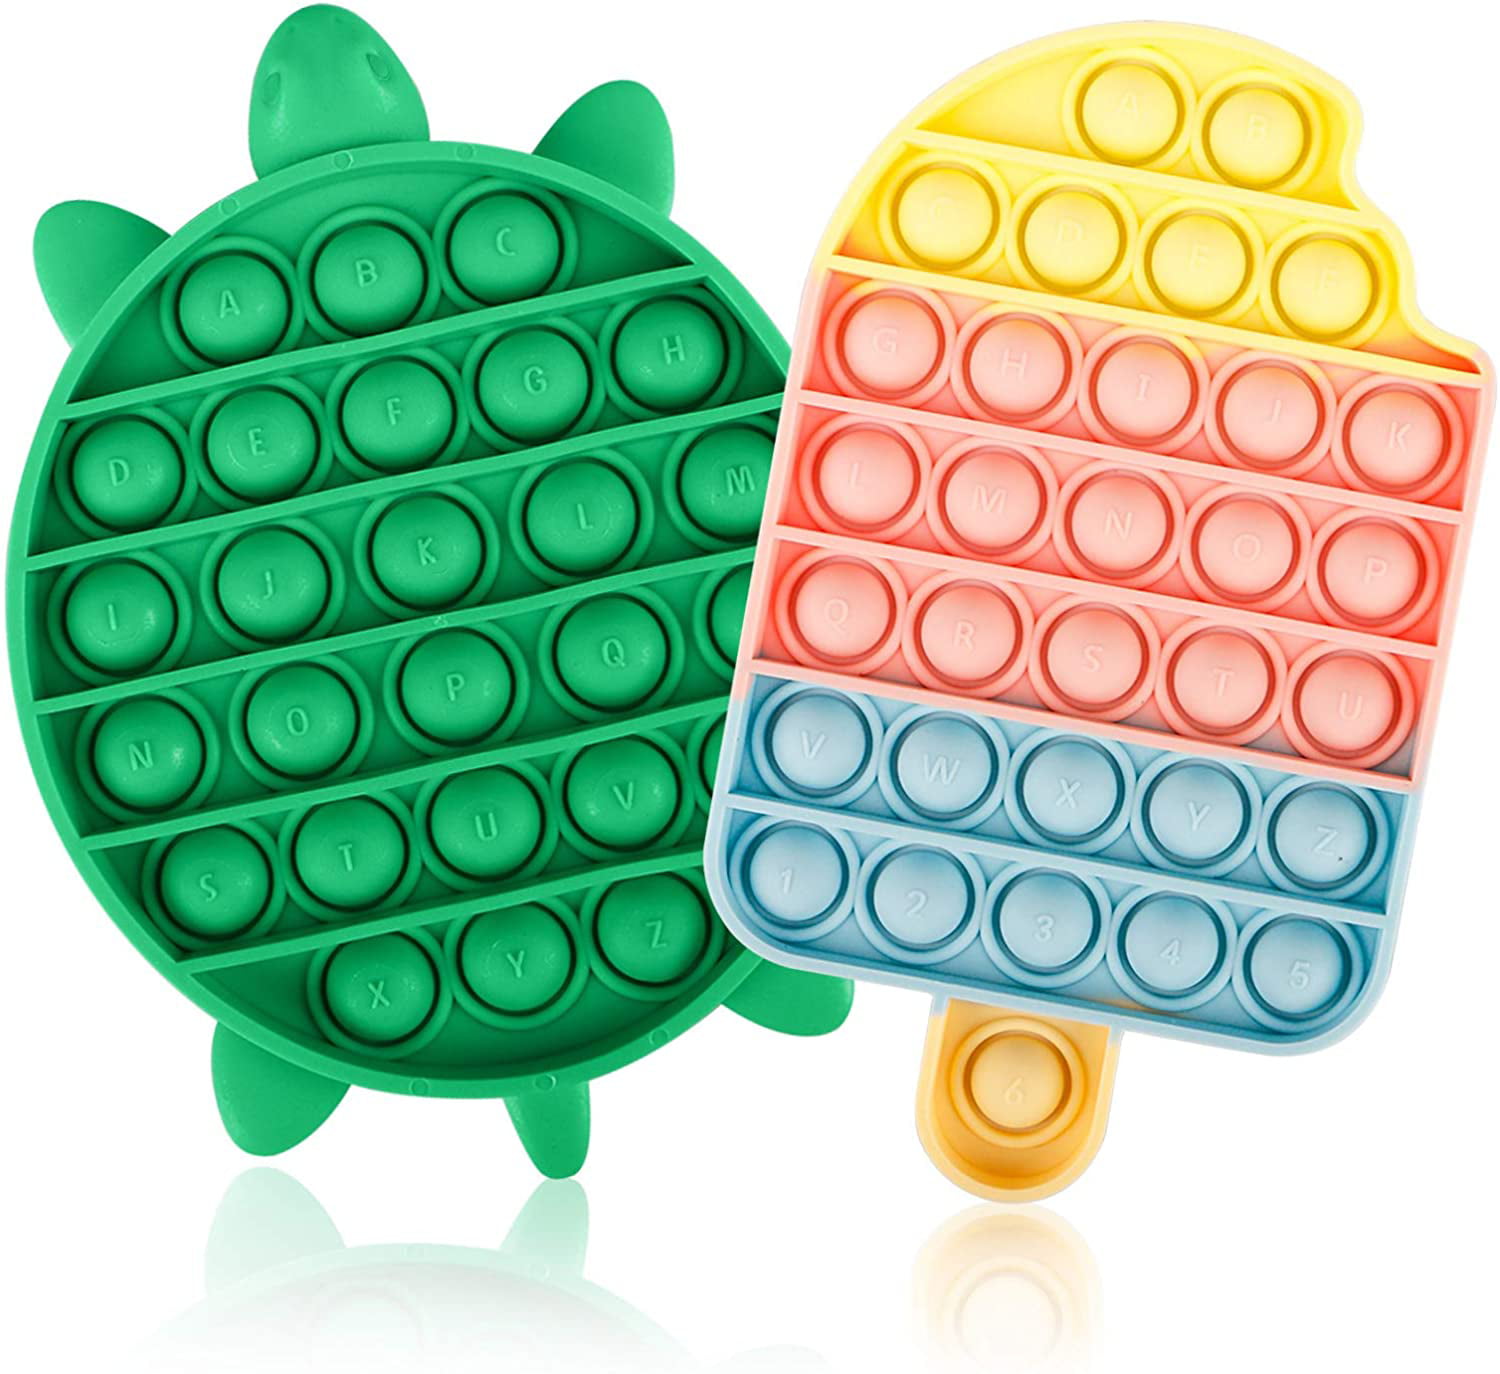 Details about   Pop It Hot Push Bubble Fidget Toys Adult Stress Relief Toy Antistress PopIt Soft 